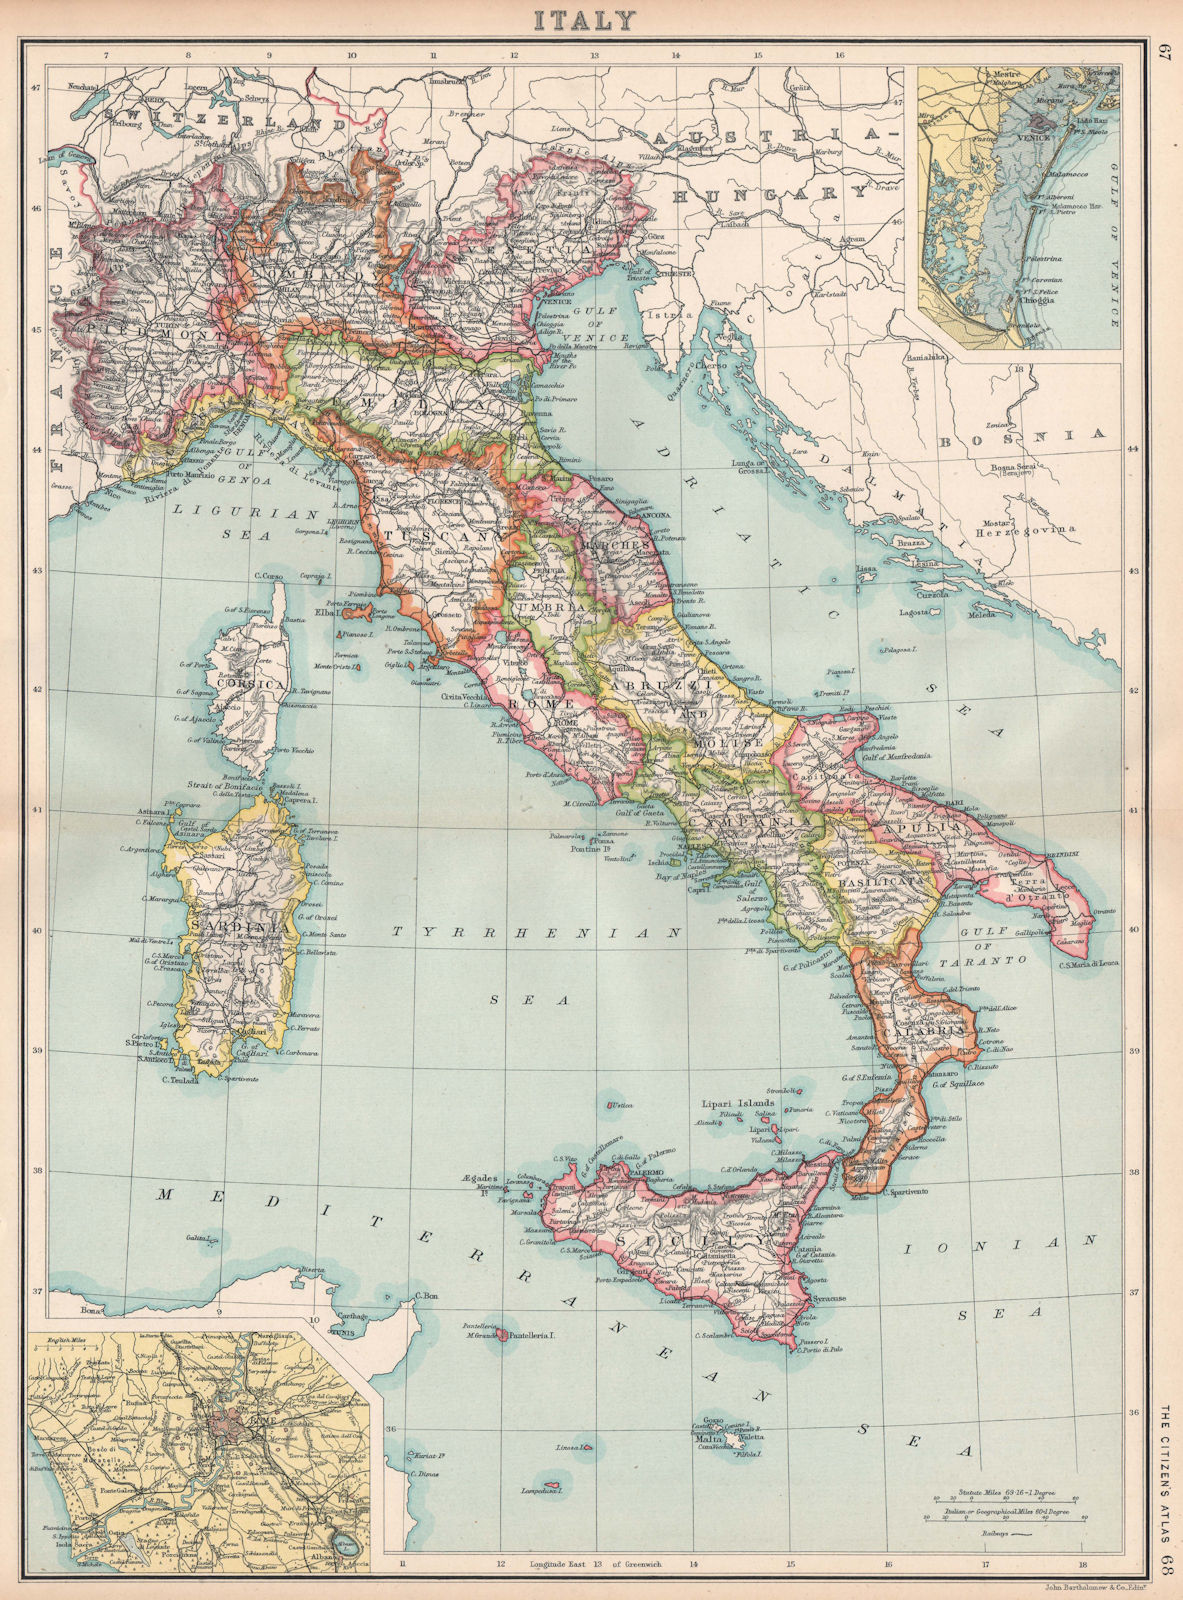 ITALY. Showing regions & railways. Inset Venice; Rome. BARTHOLOMEW 1912 map